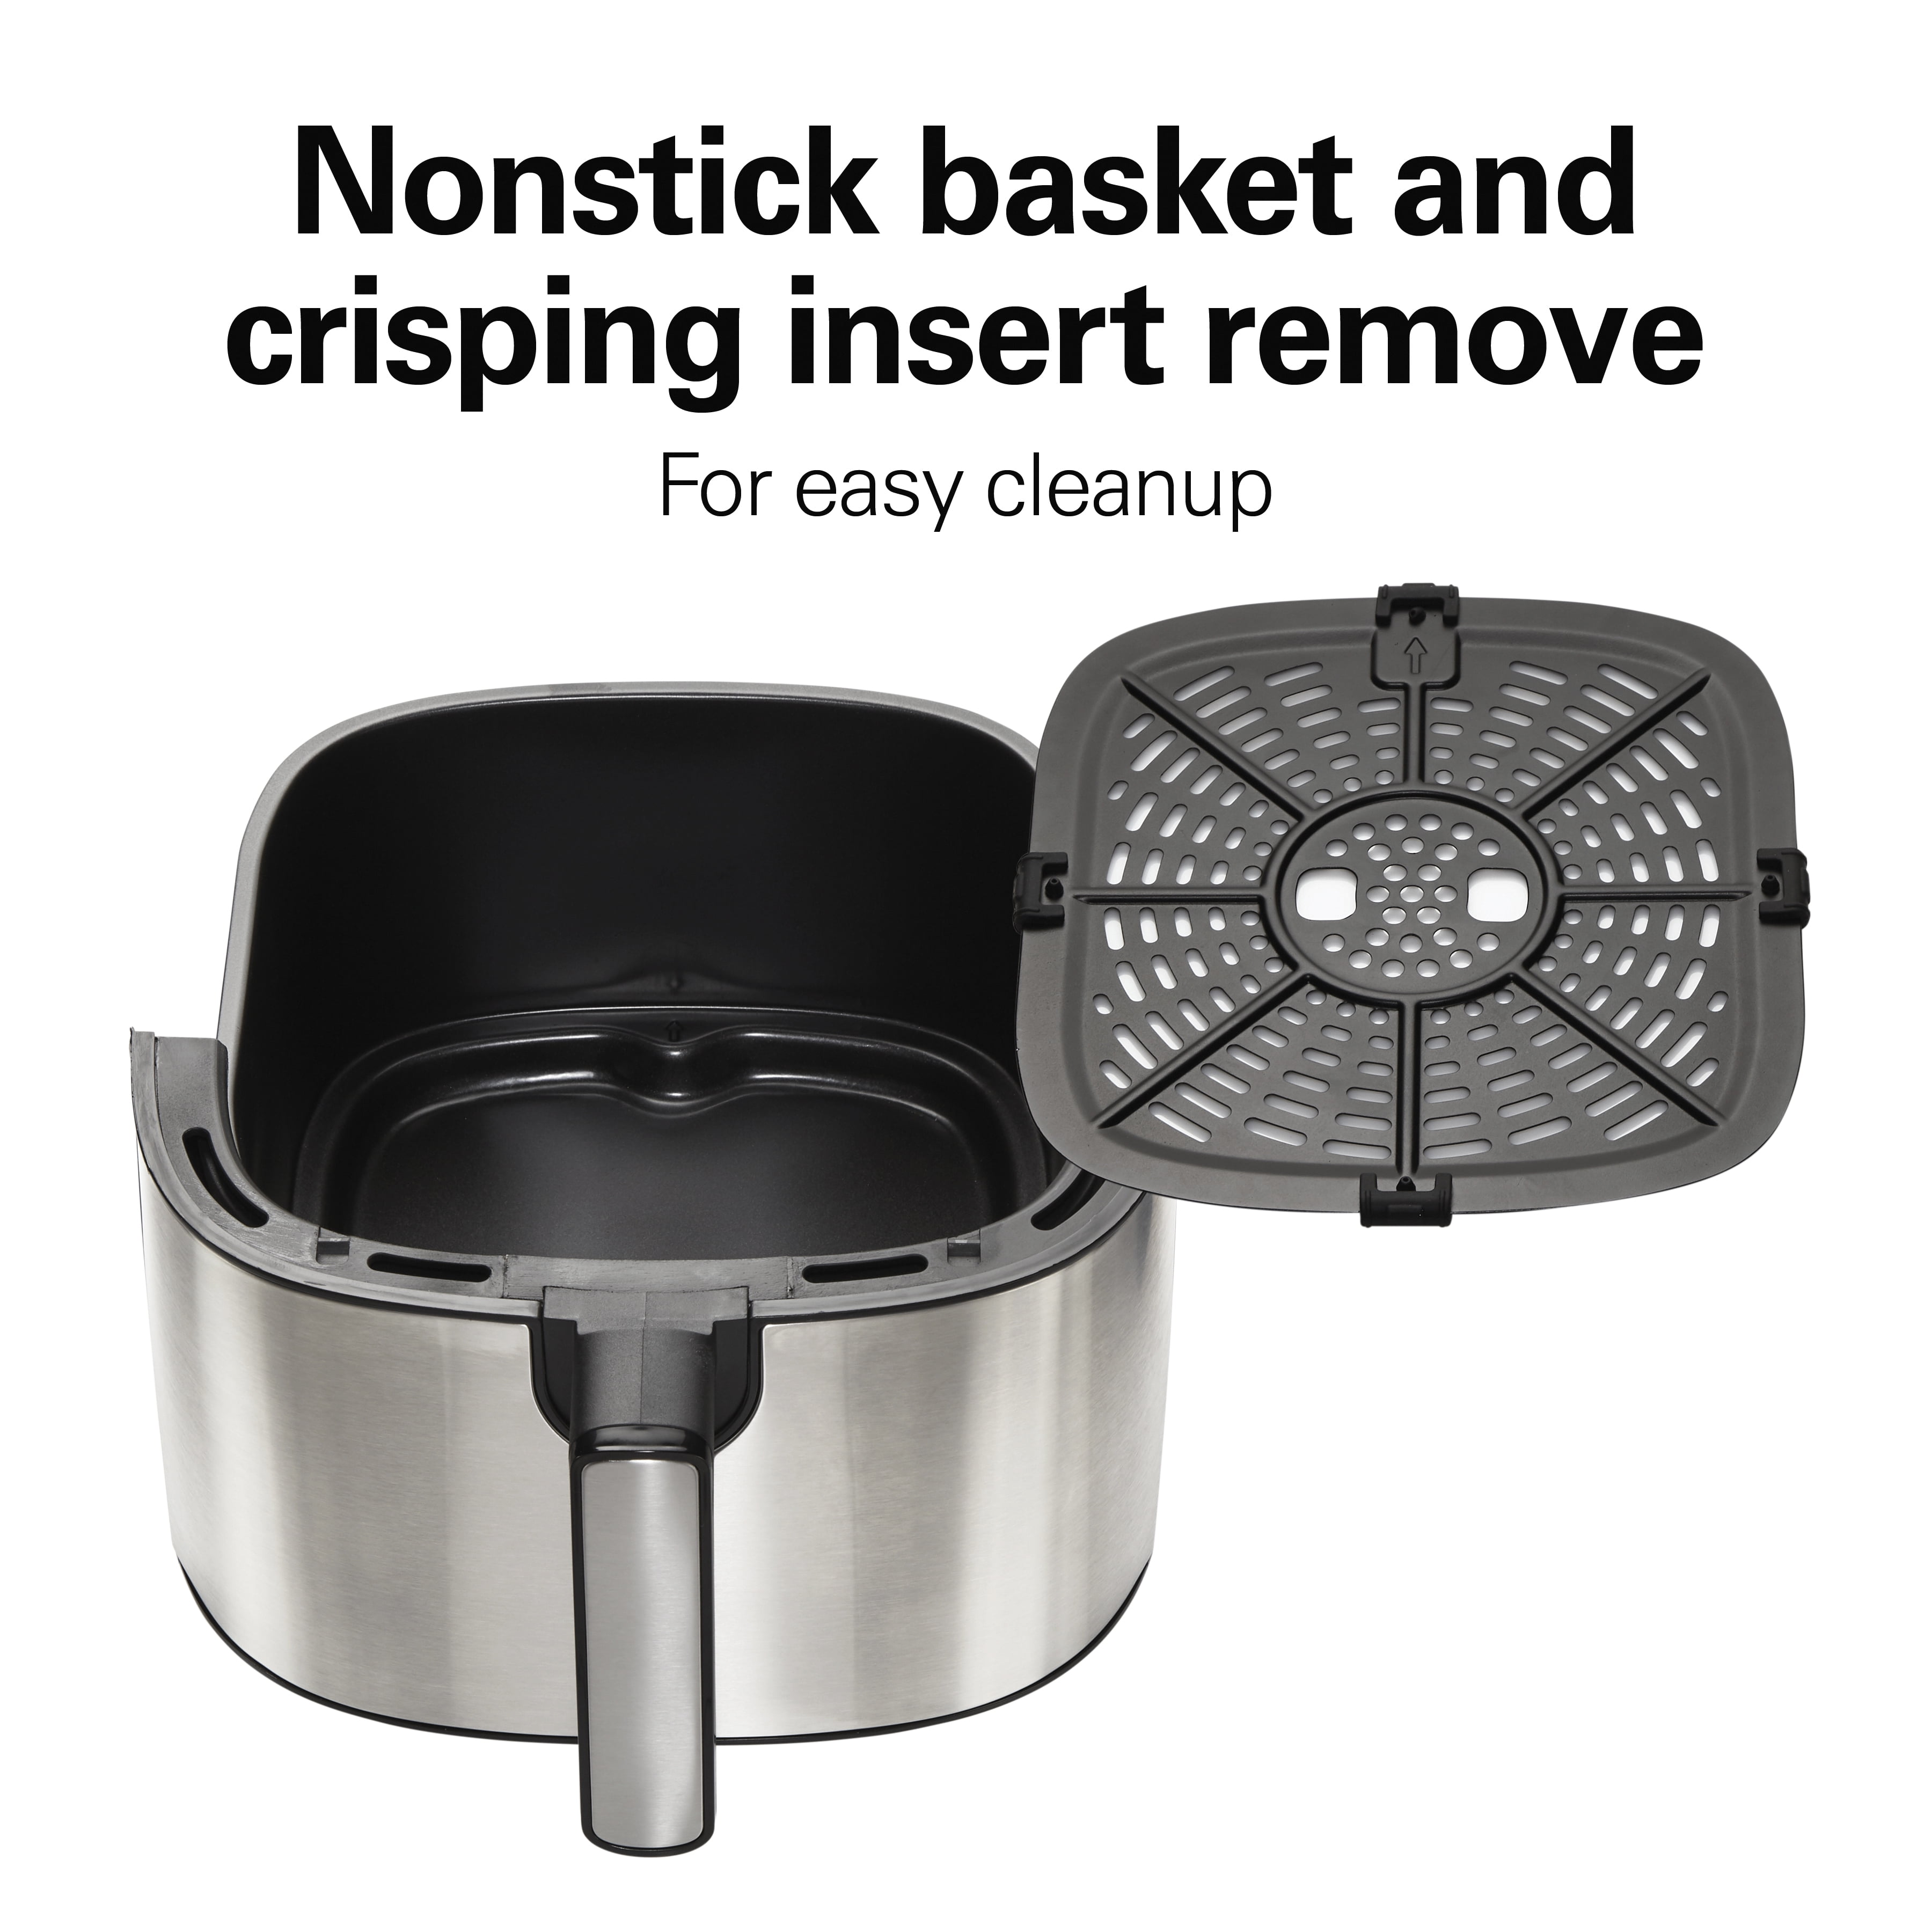 Hamilton Beach 5 Liter Digital Air Fryer with Nonstick Basket - 35075